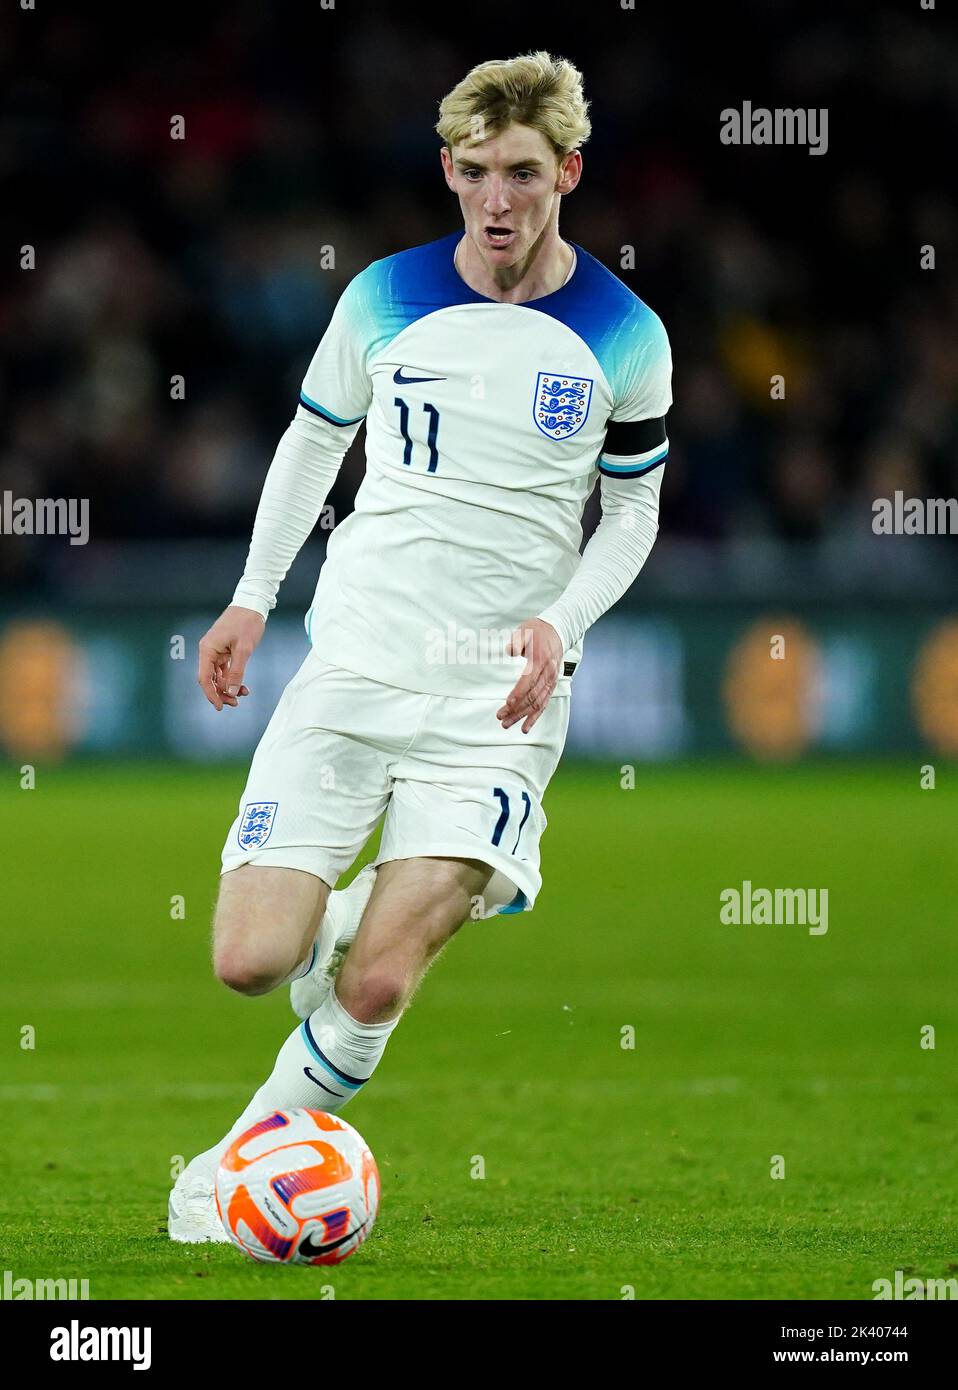 Anthony Gordon in Inghilterra durante la partita internazionale amichevole Under-21 a Bramall Lane, Sheffield. Data immagine: Martedì 27 settembre 2022. Foto Stock